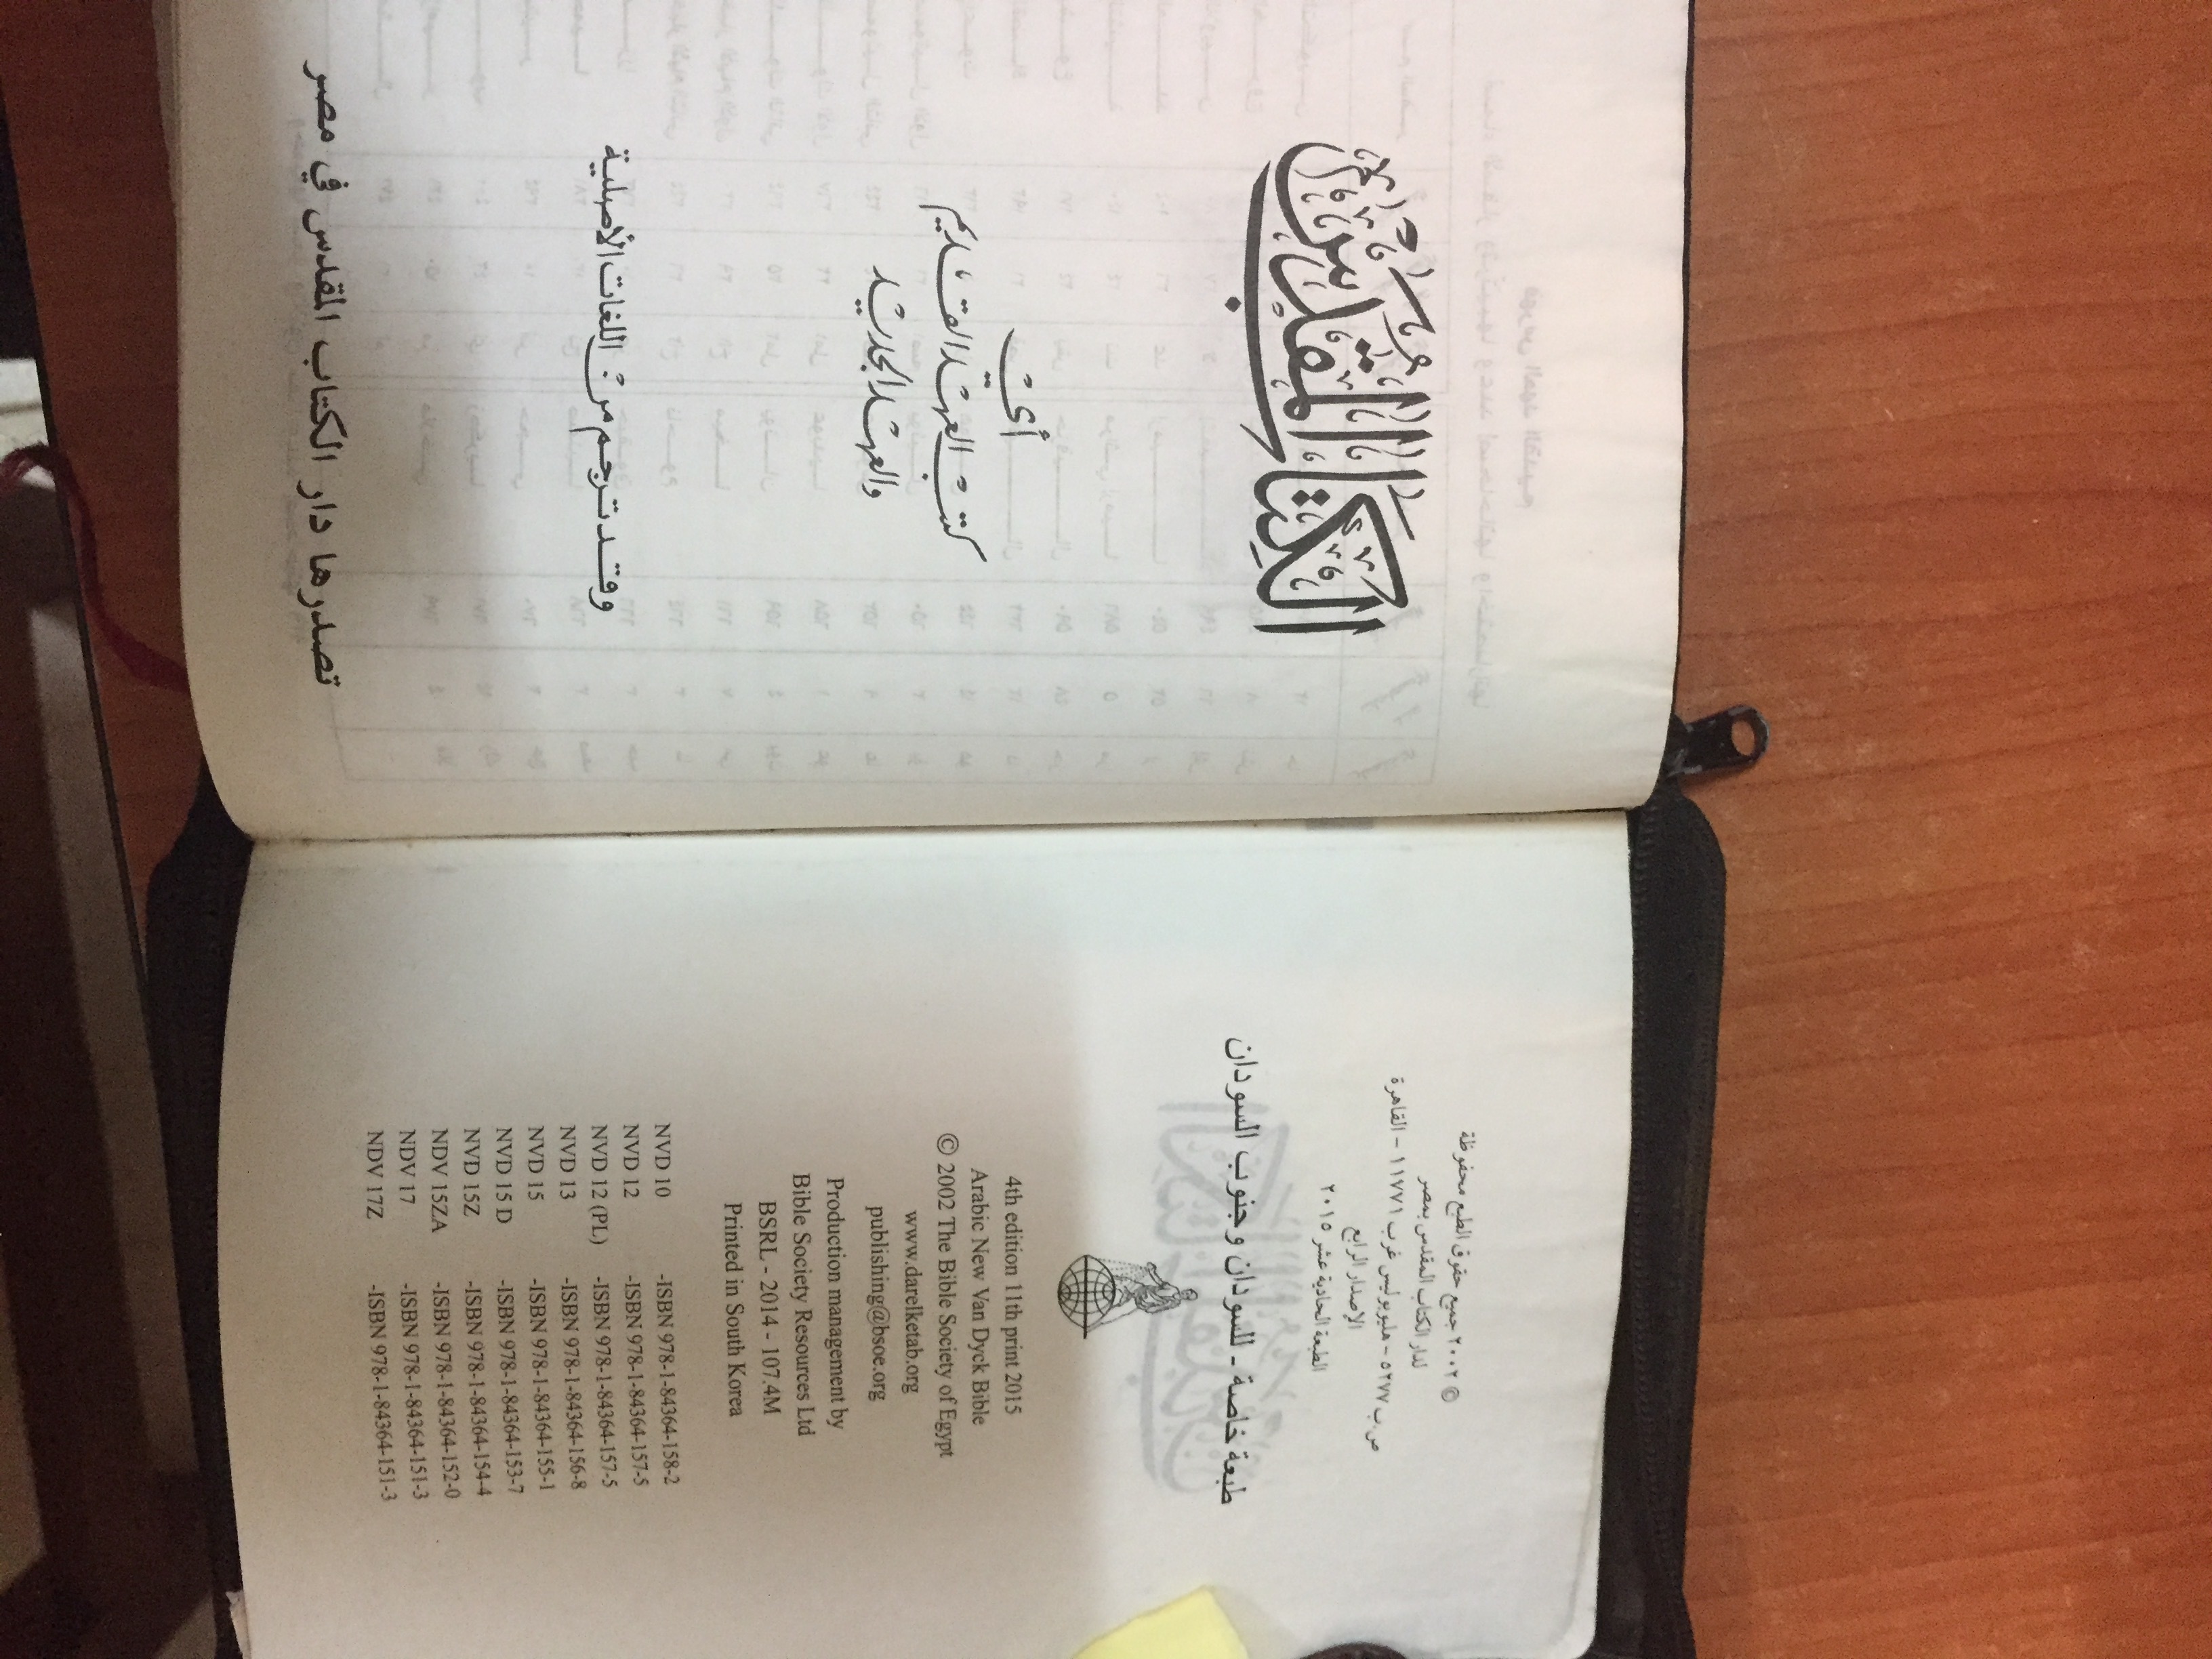 Arabic Bible pic (2)